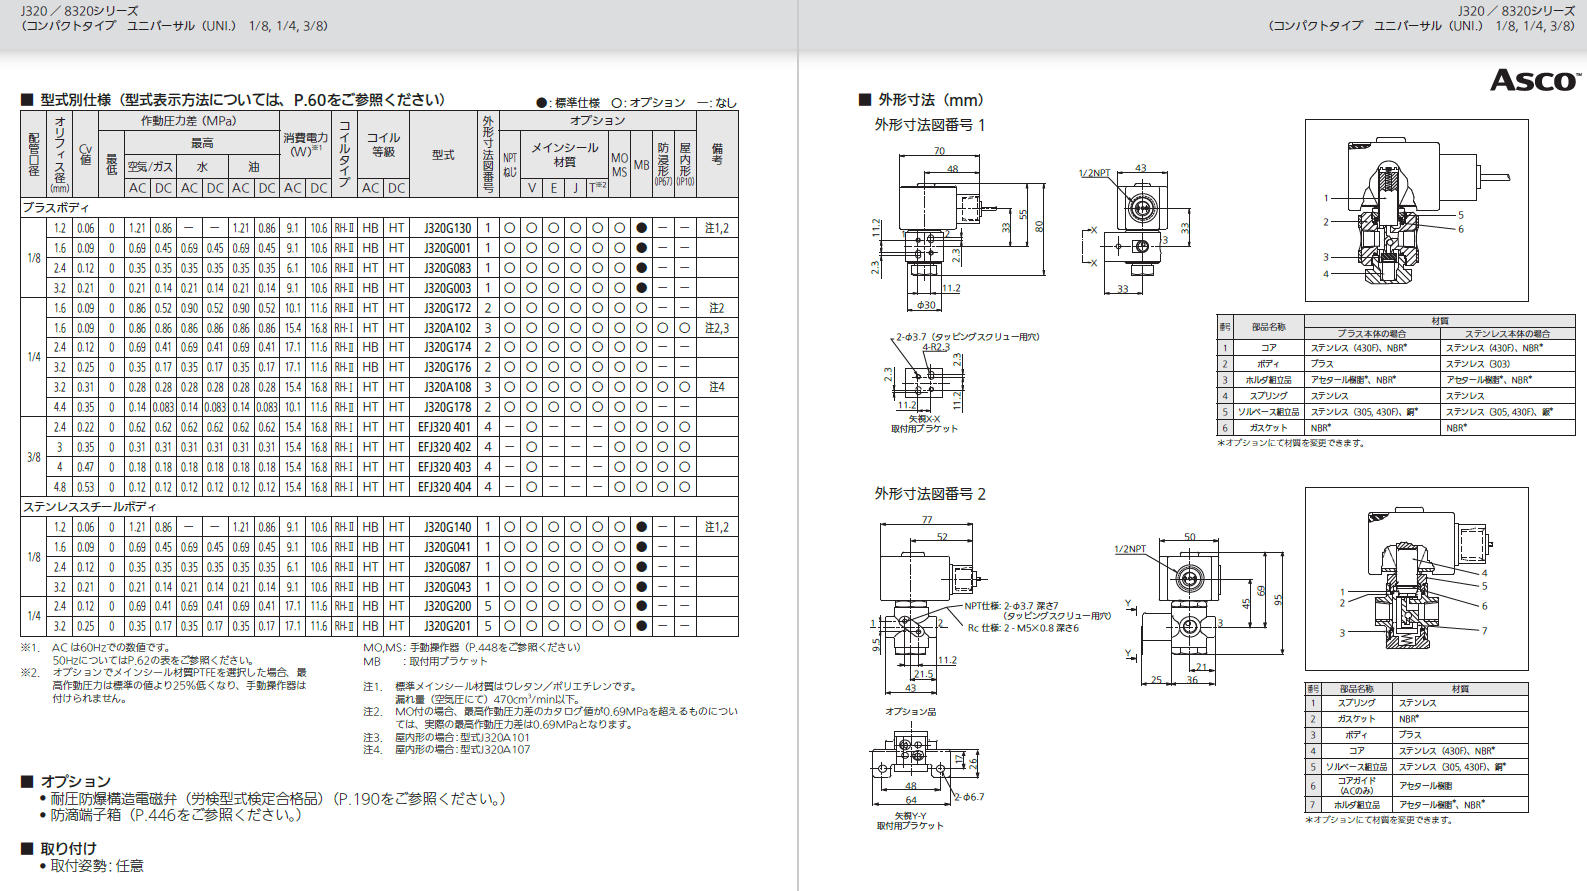 よいしな / 3方向電磁弁 UNI 配管1/8 日本アスコ㈱ ASCO